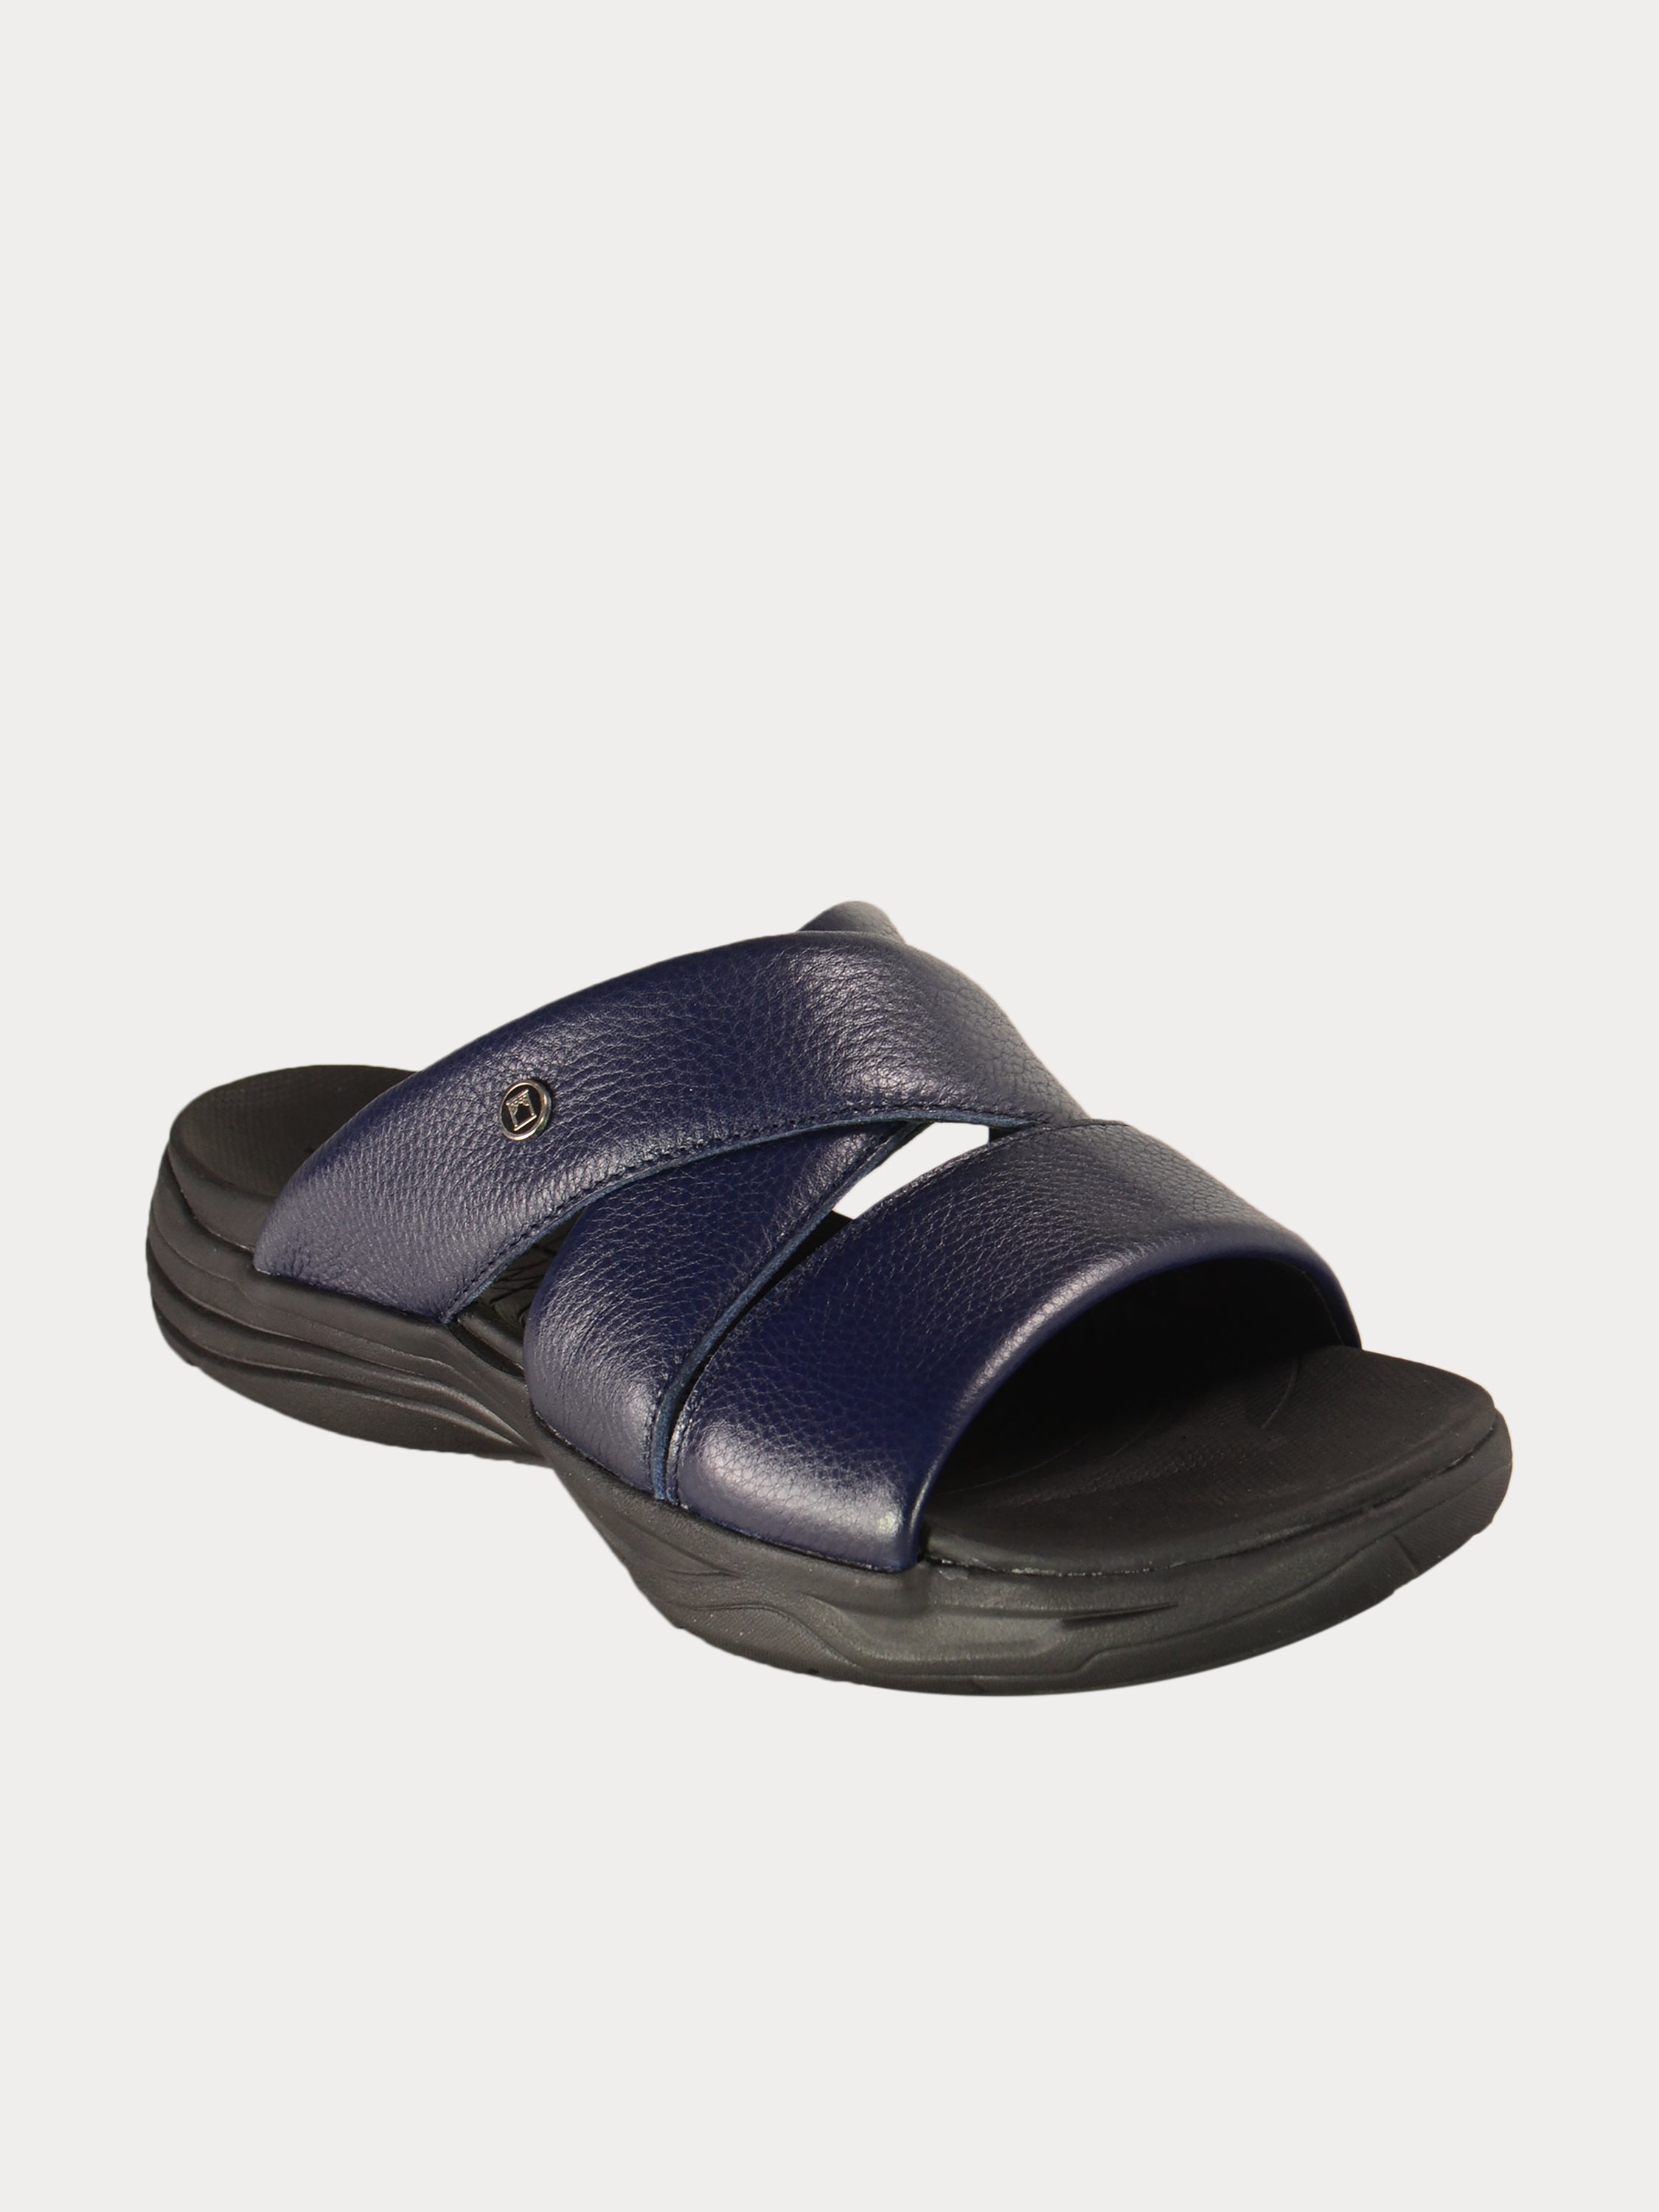 Barjeel Uno 152121 Faux Men's Arabic Sandals #color_Navy